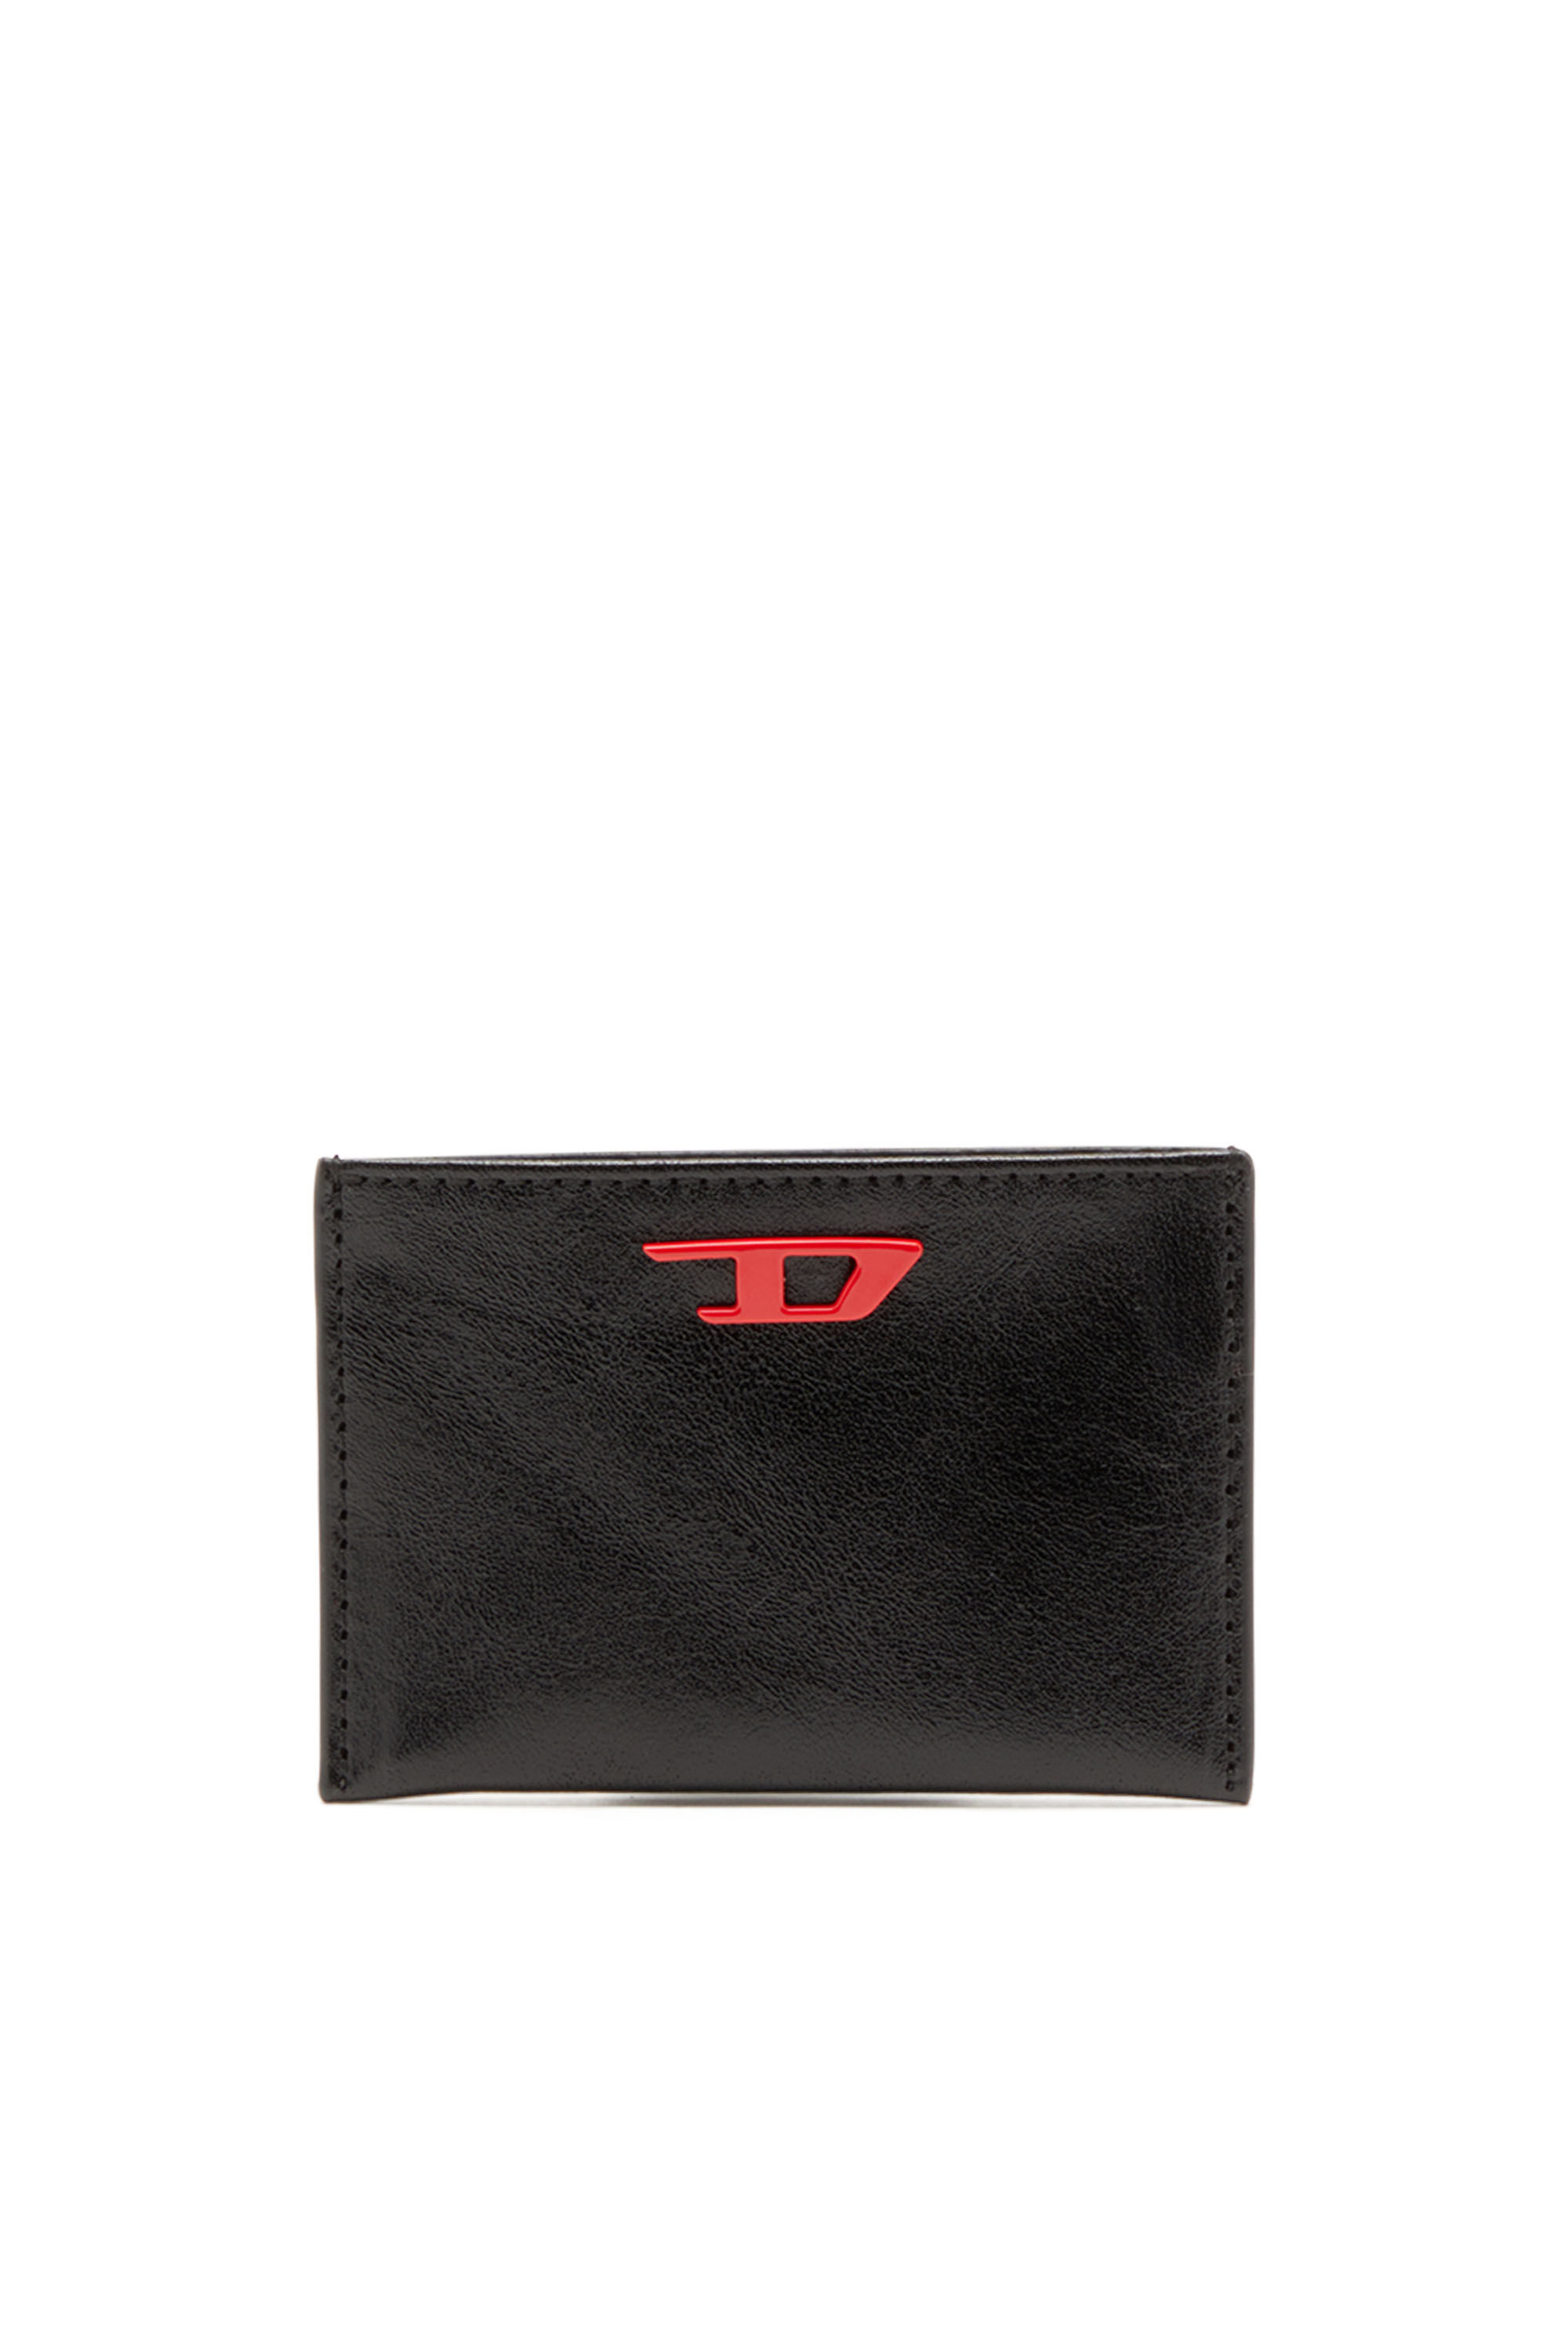 Diesel - RAVE CARD CASE, Herren Kartenetui aus Leder mit roter D-Plakette in Schwarz - Image 1